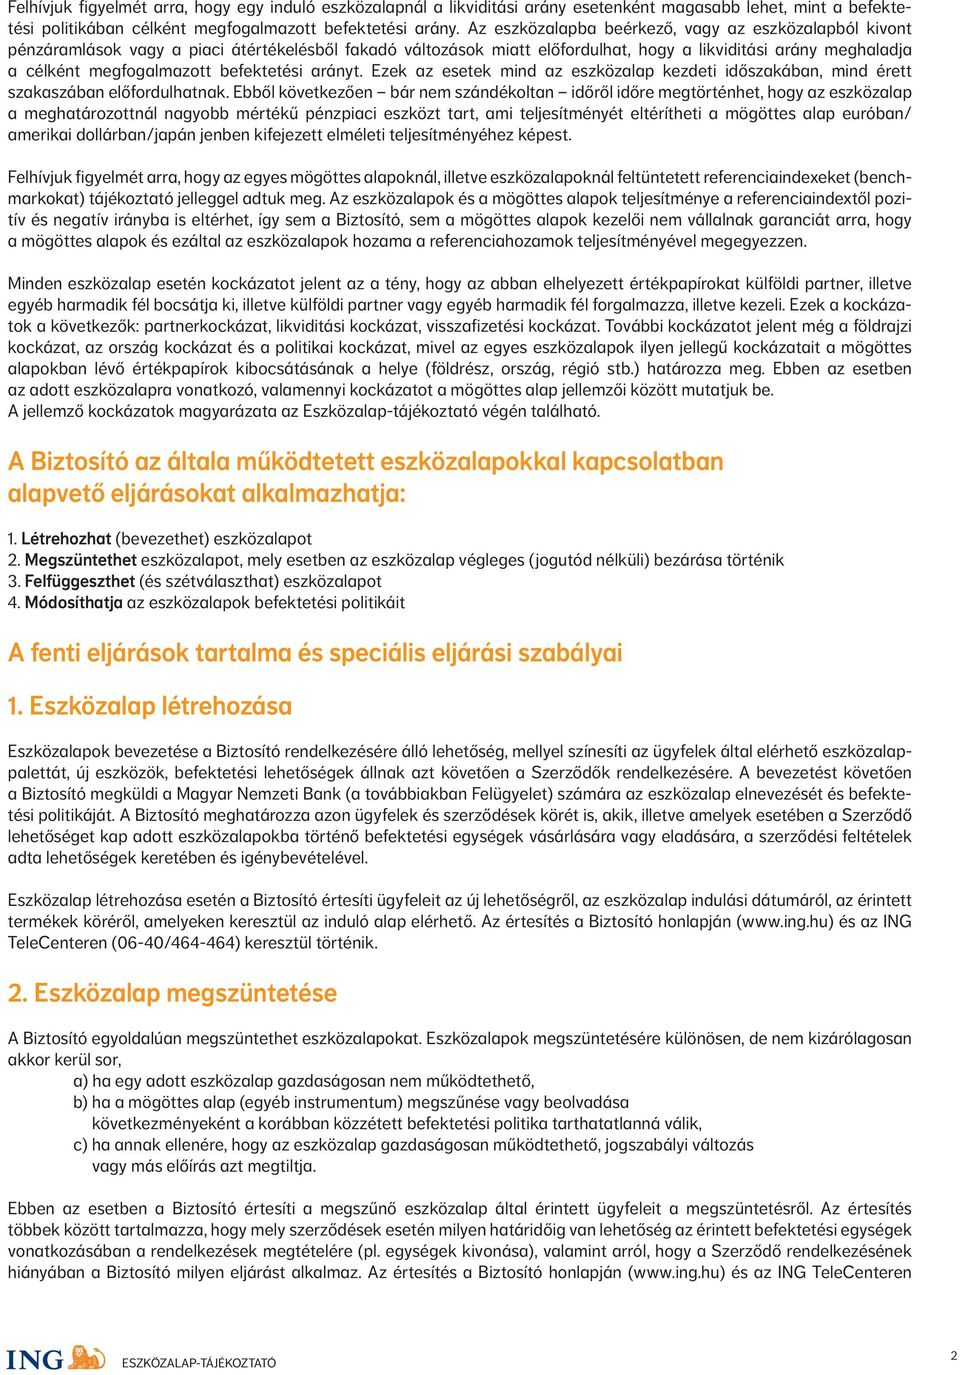 Eszközalap-tájékoztató - PDF Ingyenes letöltés